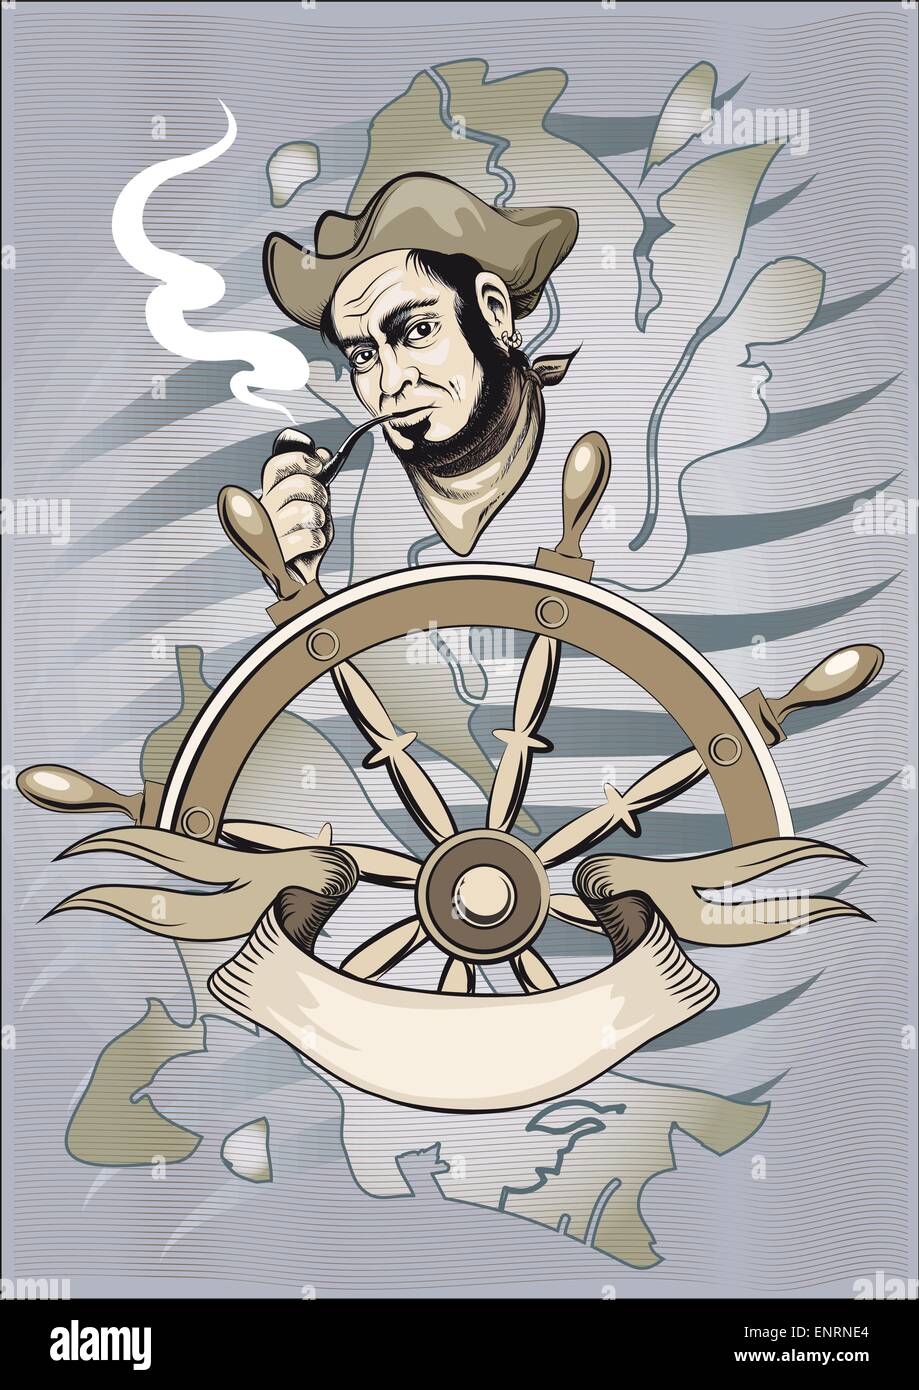 Der alte Seemann in einem Dreispitz und Hals Tuch steht hinter einem Handrad und raucht Stock Vektor